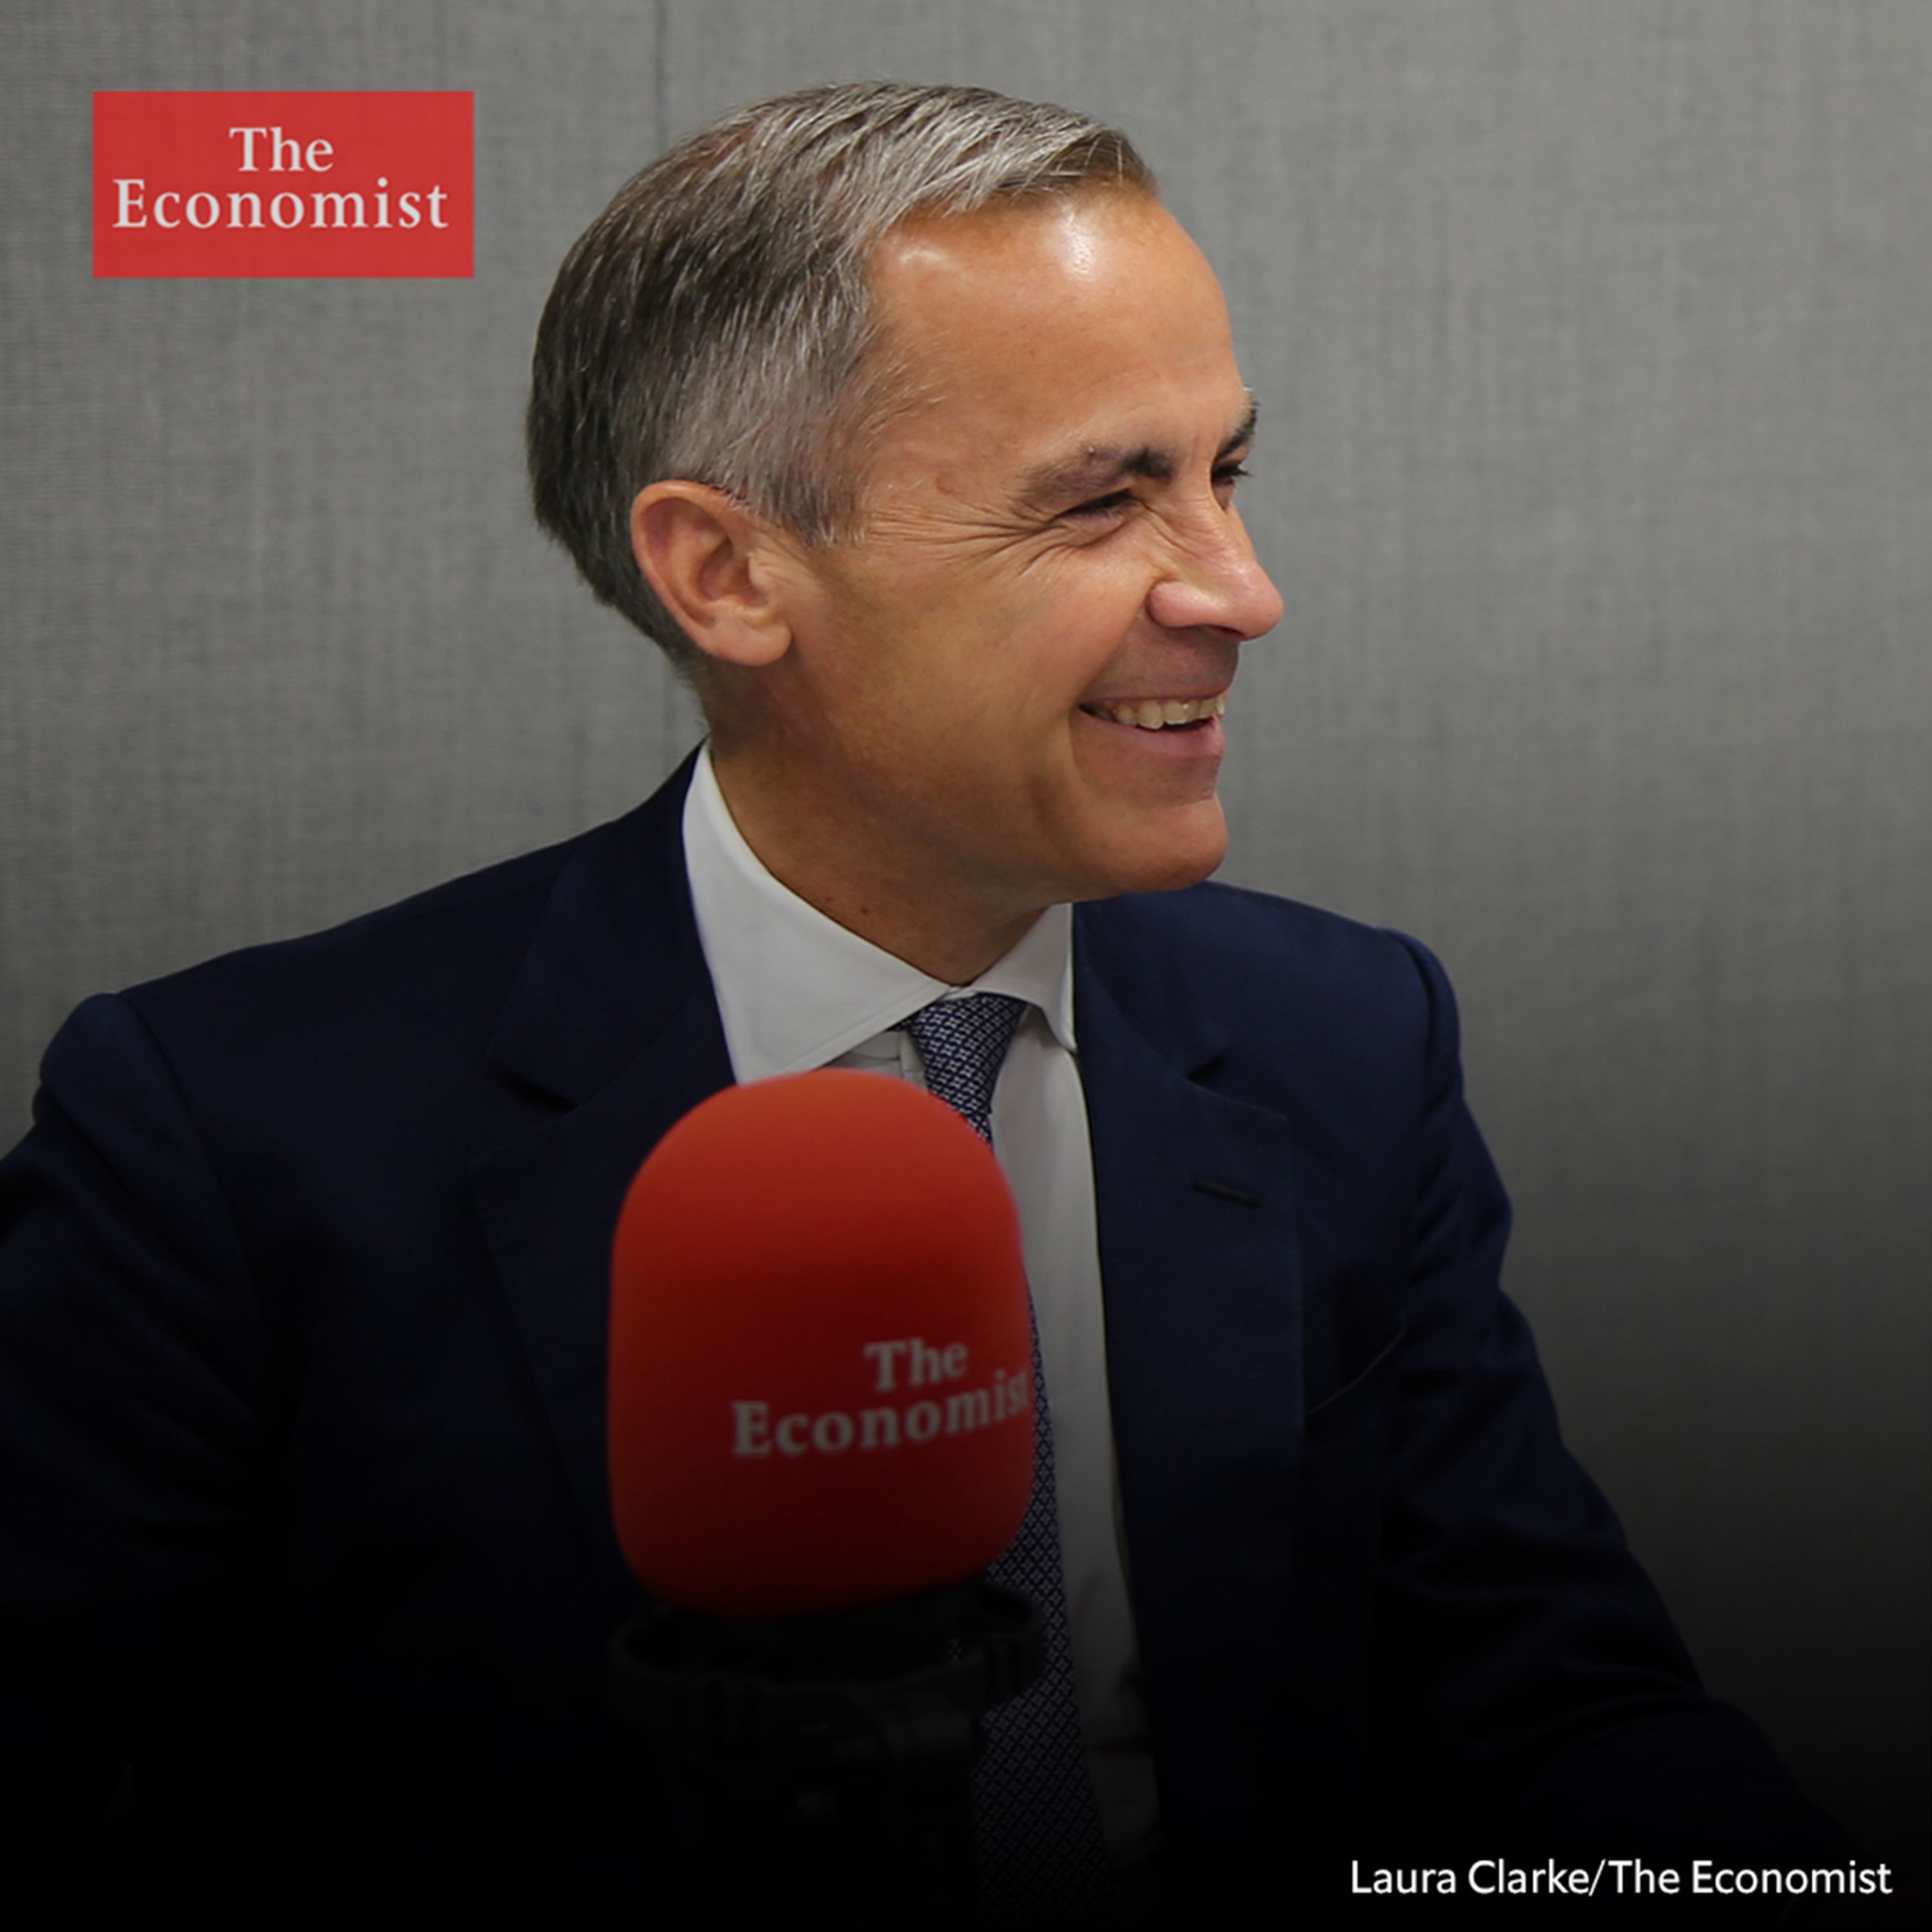 The Economist Podcasts